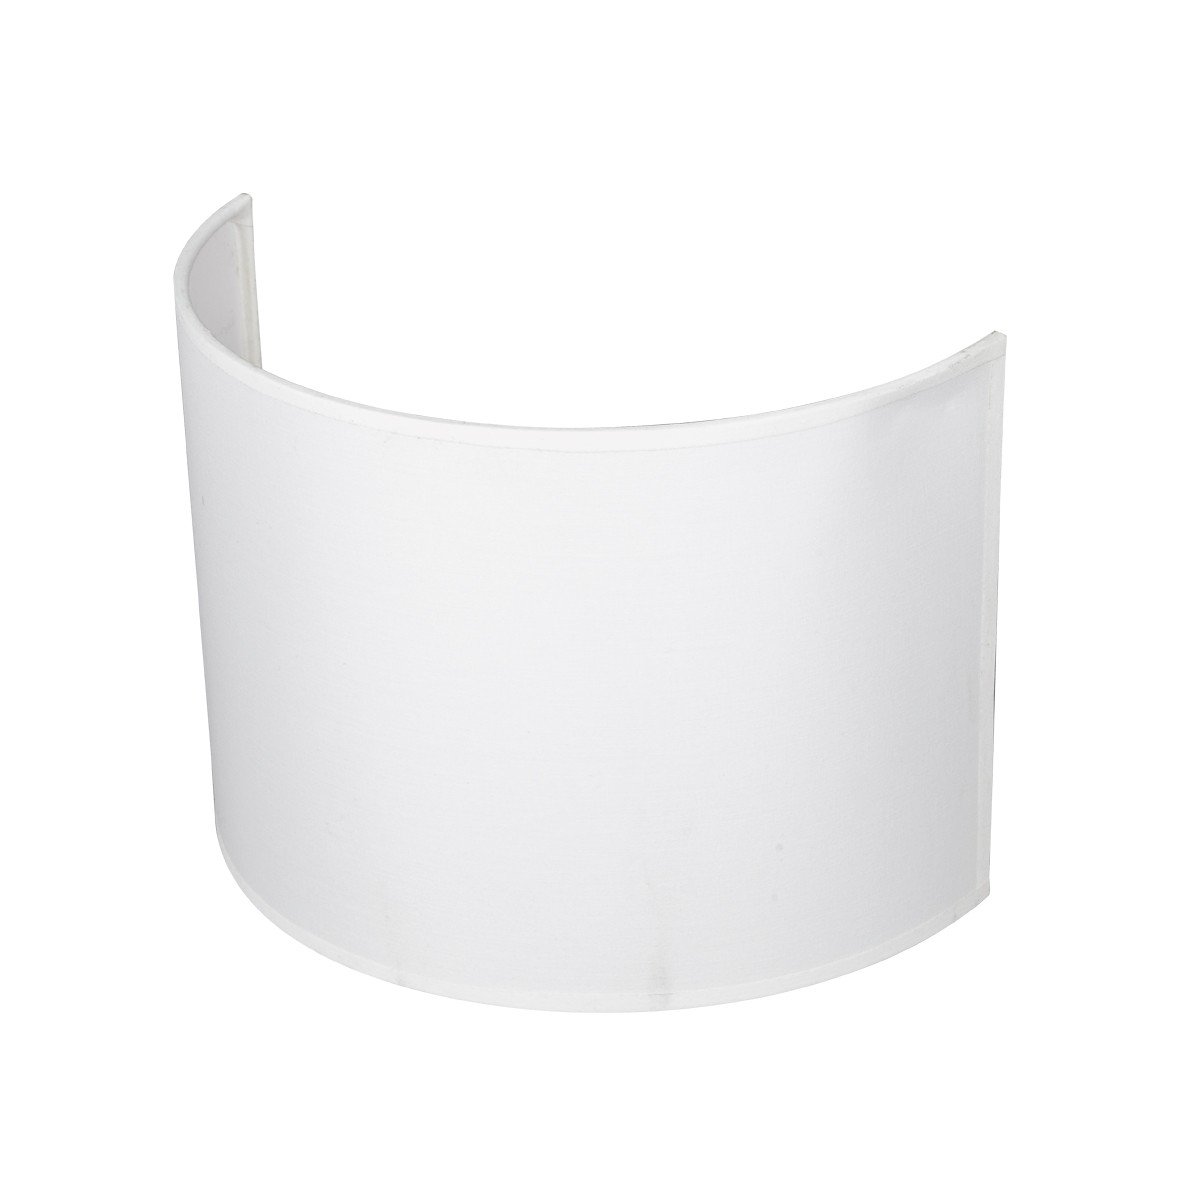 Καπέλο μονόχρωμο μισό ορθογώνιο 1 cotton 28.5cm κάτω πλευρά λευκό VK/E27/E14/C28/W